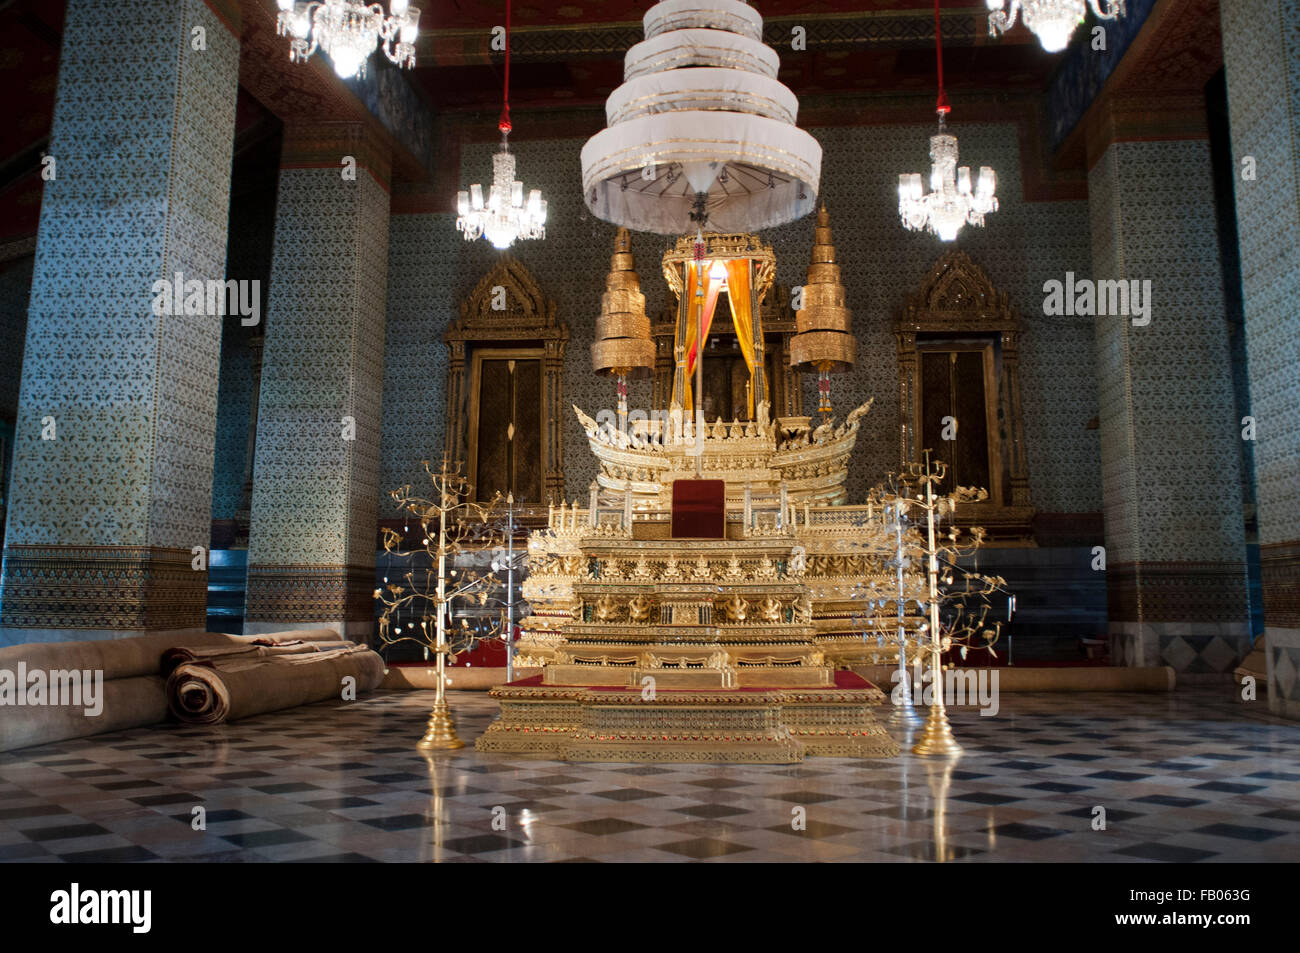 Temple du Bouddha Émeraude dans la chambre du Grand Palais. Le monastère royal de l'Emeraude, Bangkok, Thaïlande. L'intérieur du Grand Palais, nous pouvons voir l'architecture Thaï magique avec leurs toits pointus, gravures et sculptures d'une valeur inestimable, une réplique de l'Angkor temples et le célèbre Bouddha d'Émeraude à l'intérieur du temple Wat Phra Kaew, un Bouddha de Jade sculpté à partir de la ville de Chiang Mai, qui est le plus populaire et vénéré de tous Thaïlande Bouddha. Banque D'Images